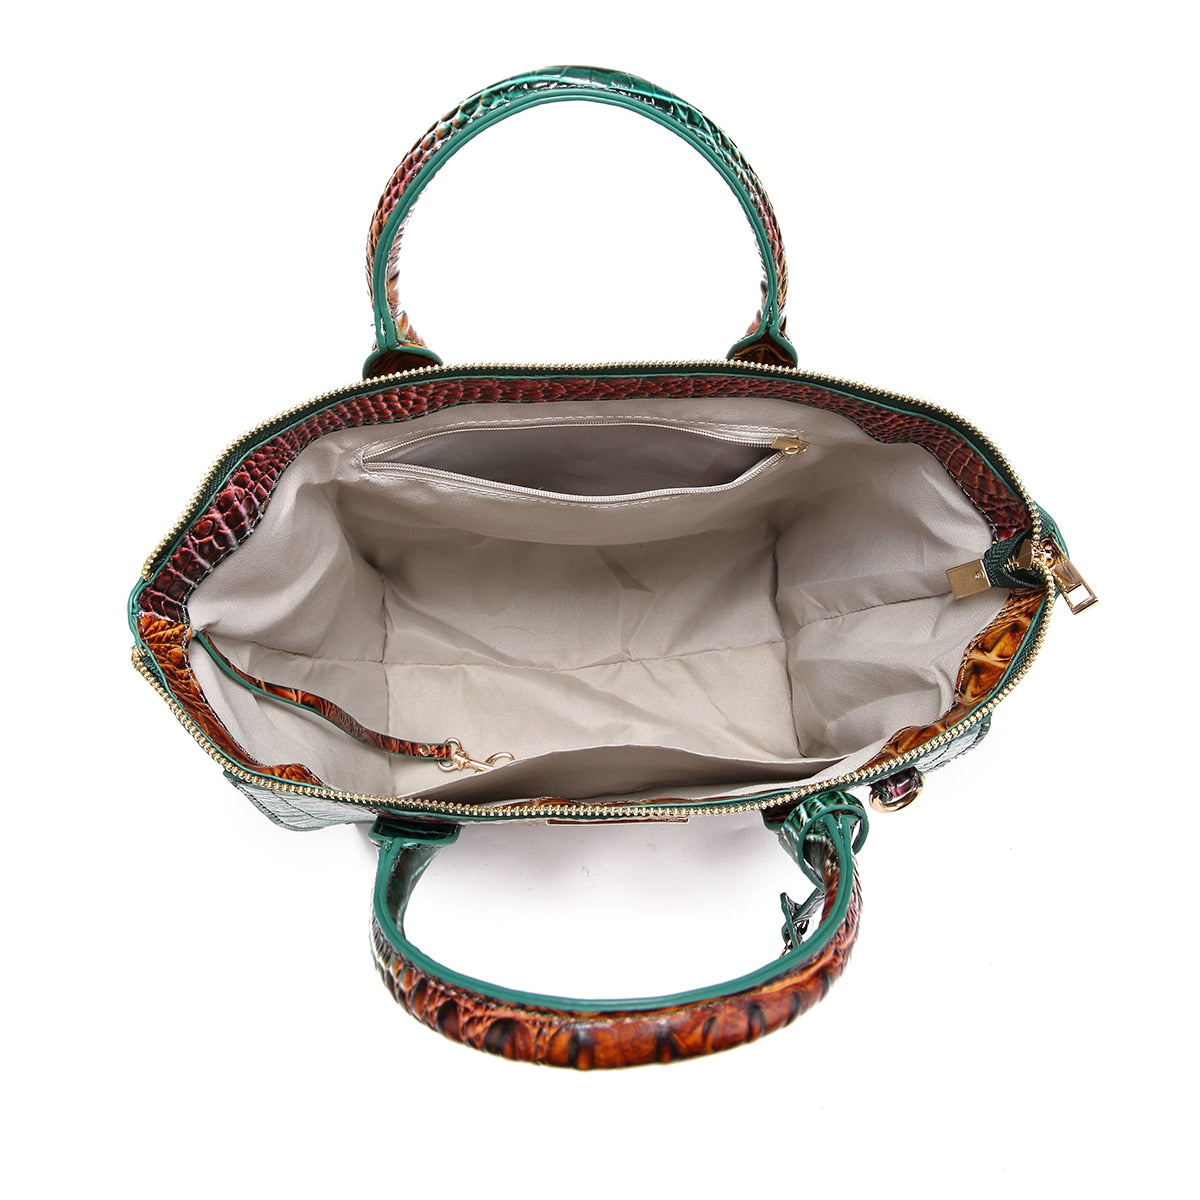 TEEK - Ombre Double RepStyle Embossed Handbag  theteekdotcom   